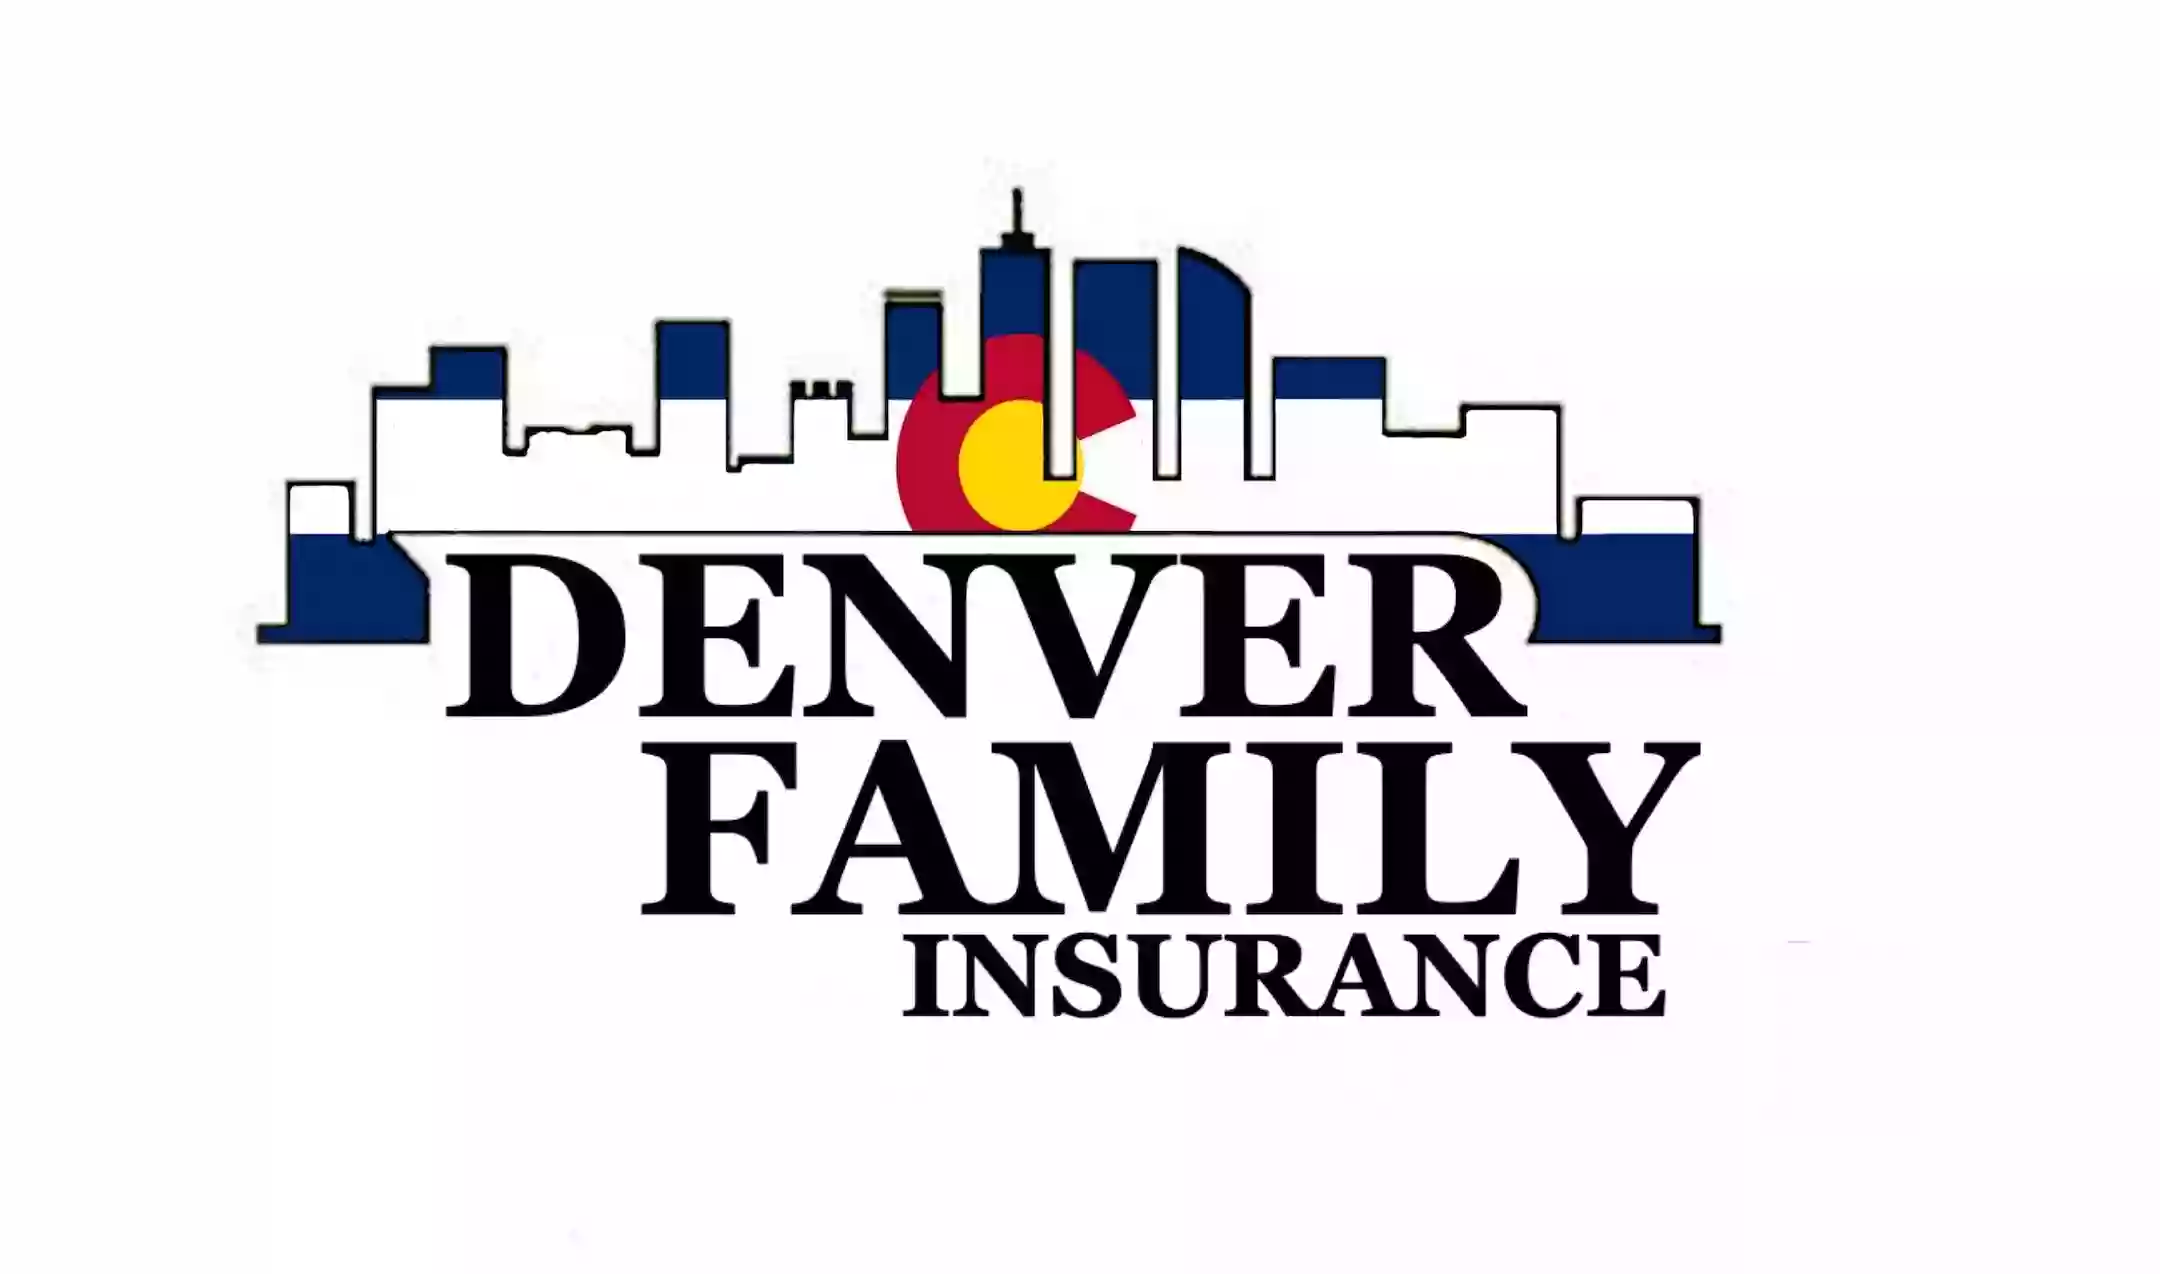 Denver Family Insurance Ltd